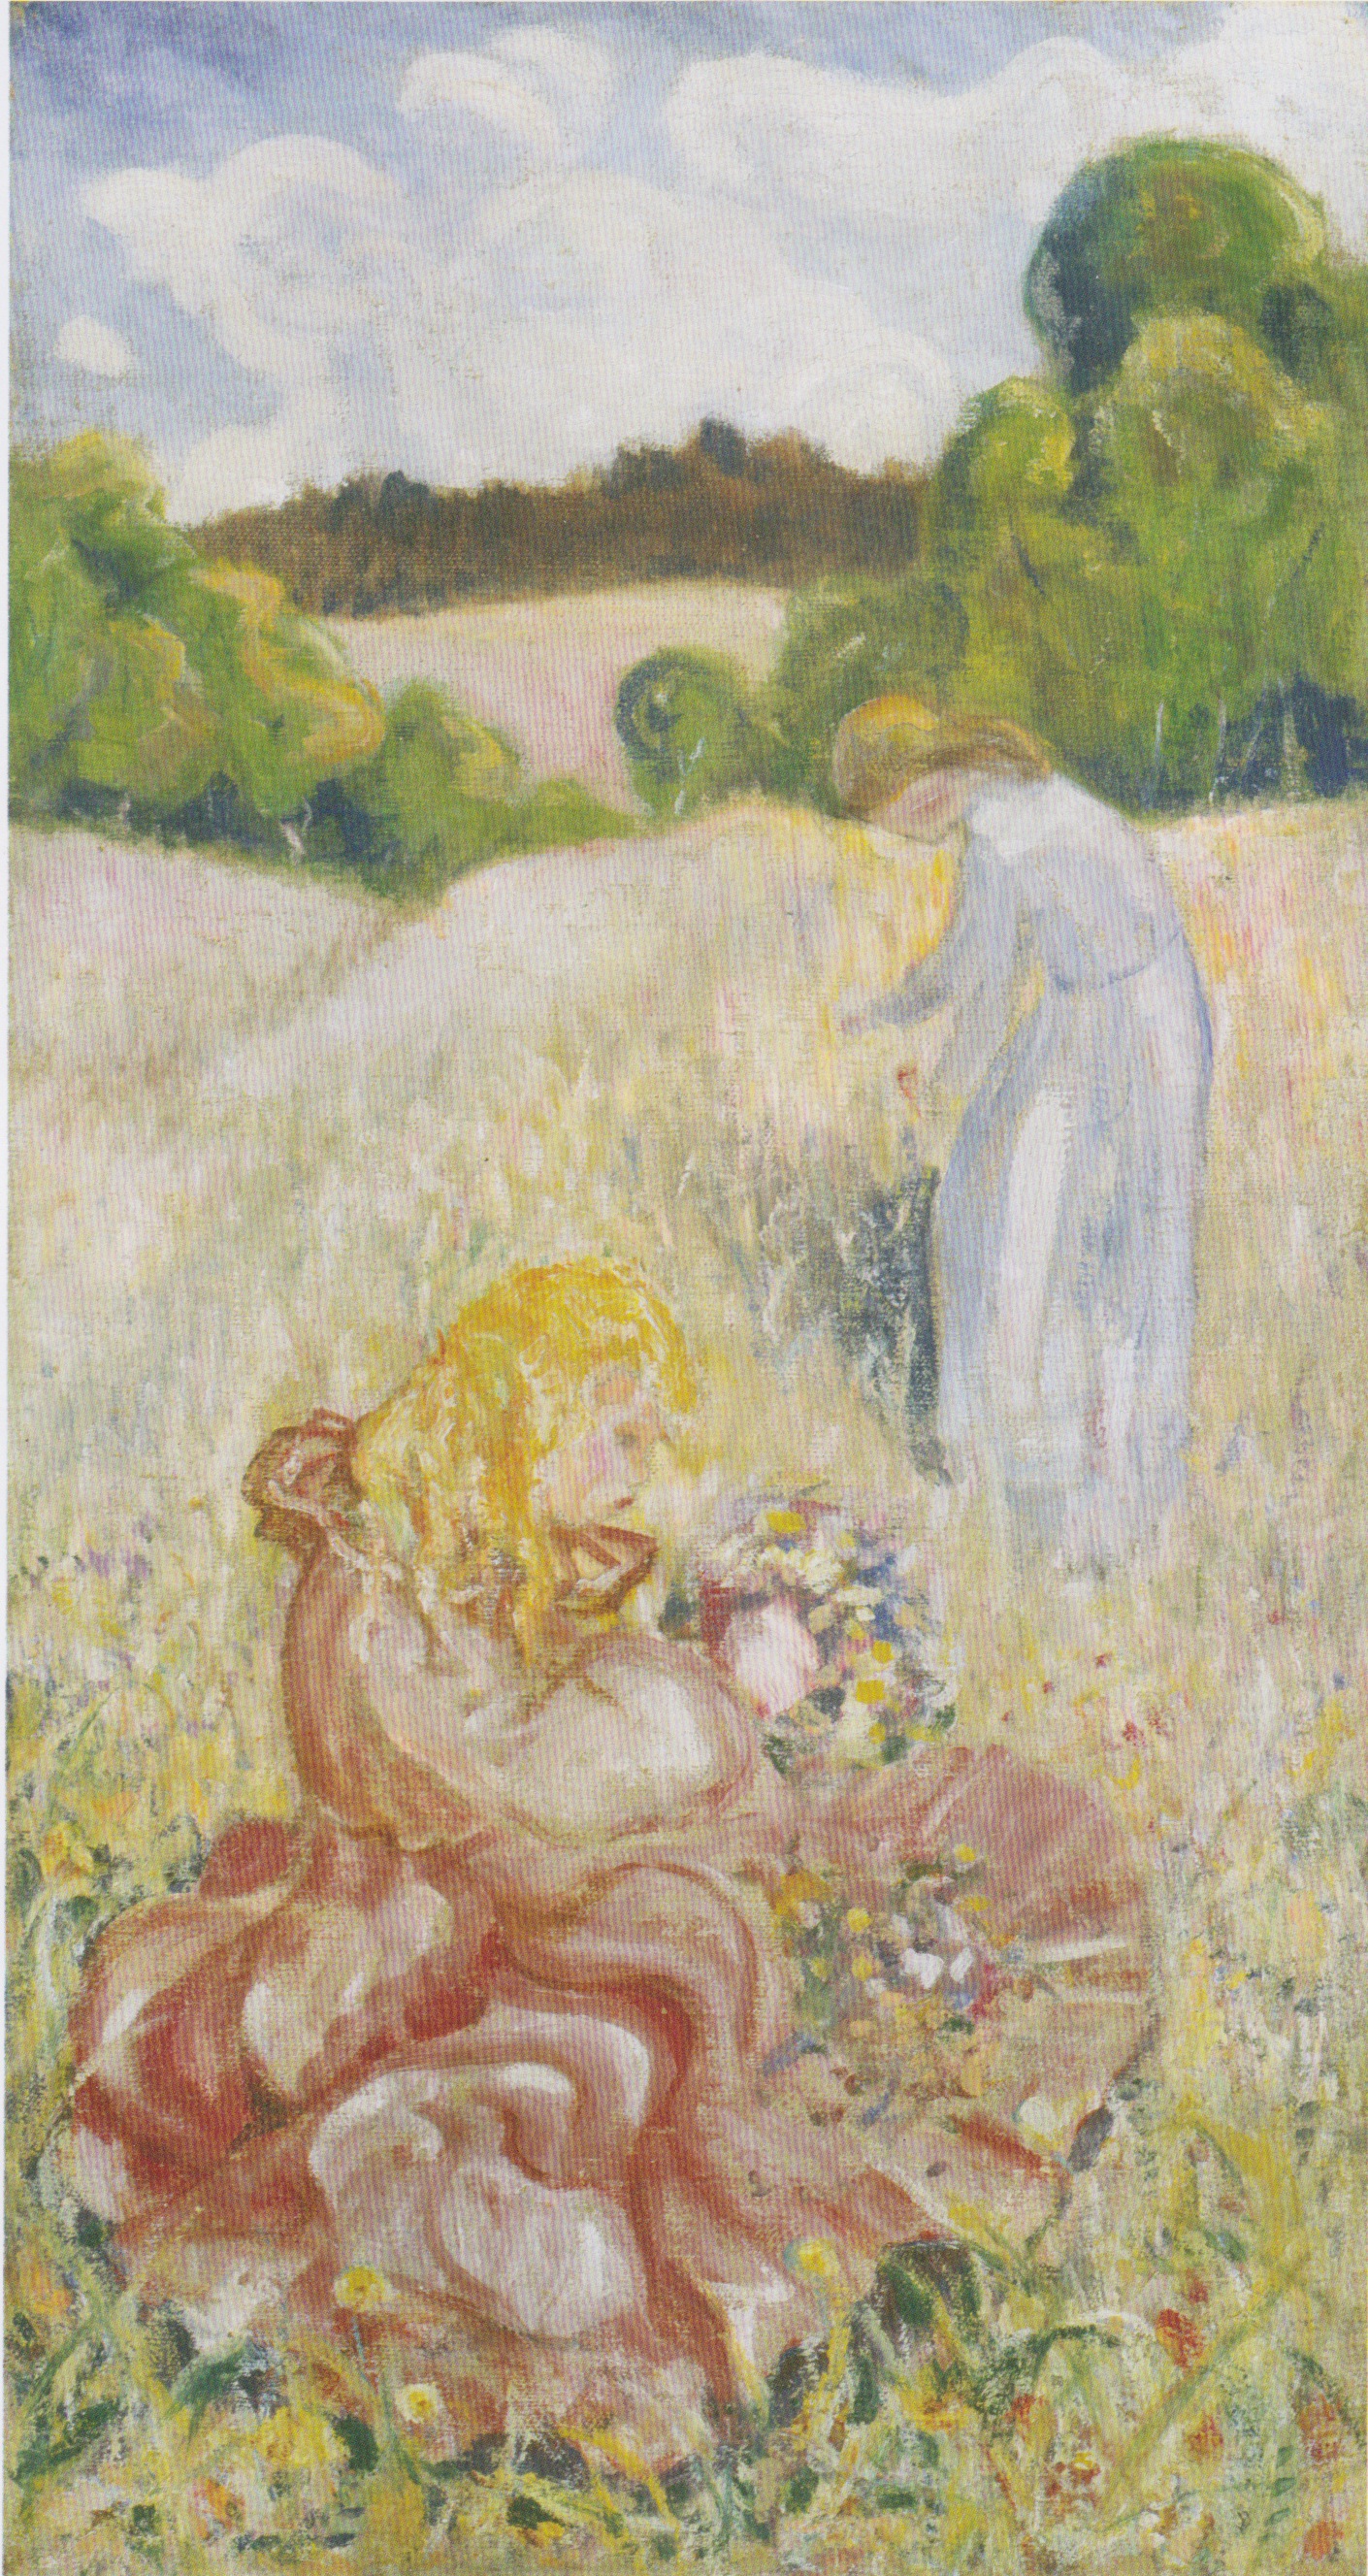 Johannessen - Kinder (Die Kinder auf der Blumenwiese) - ca 1917